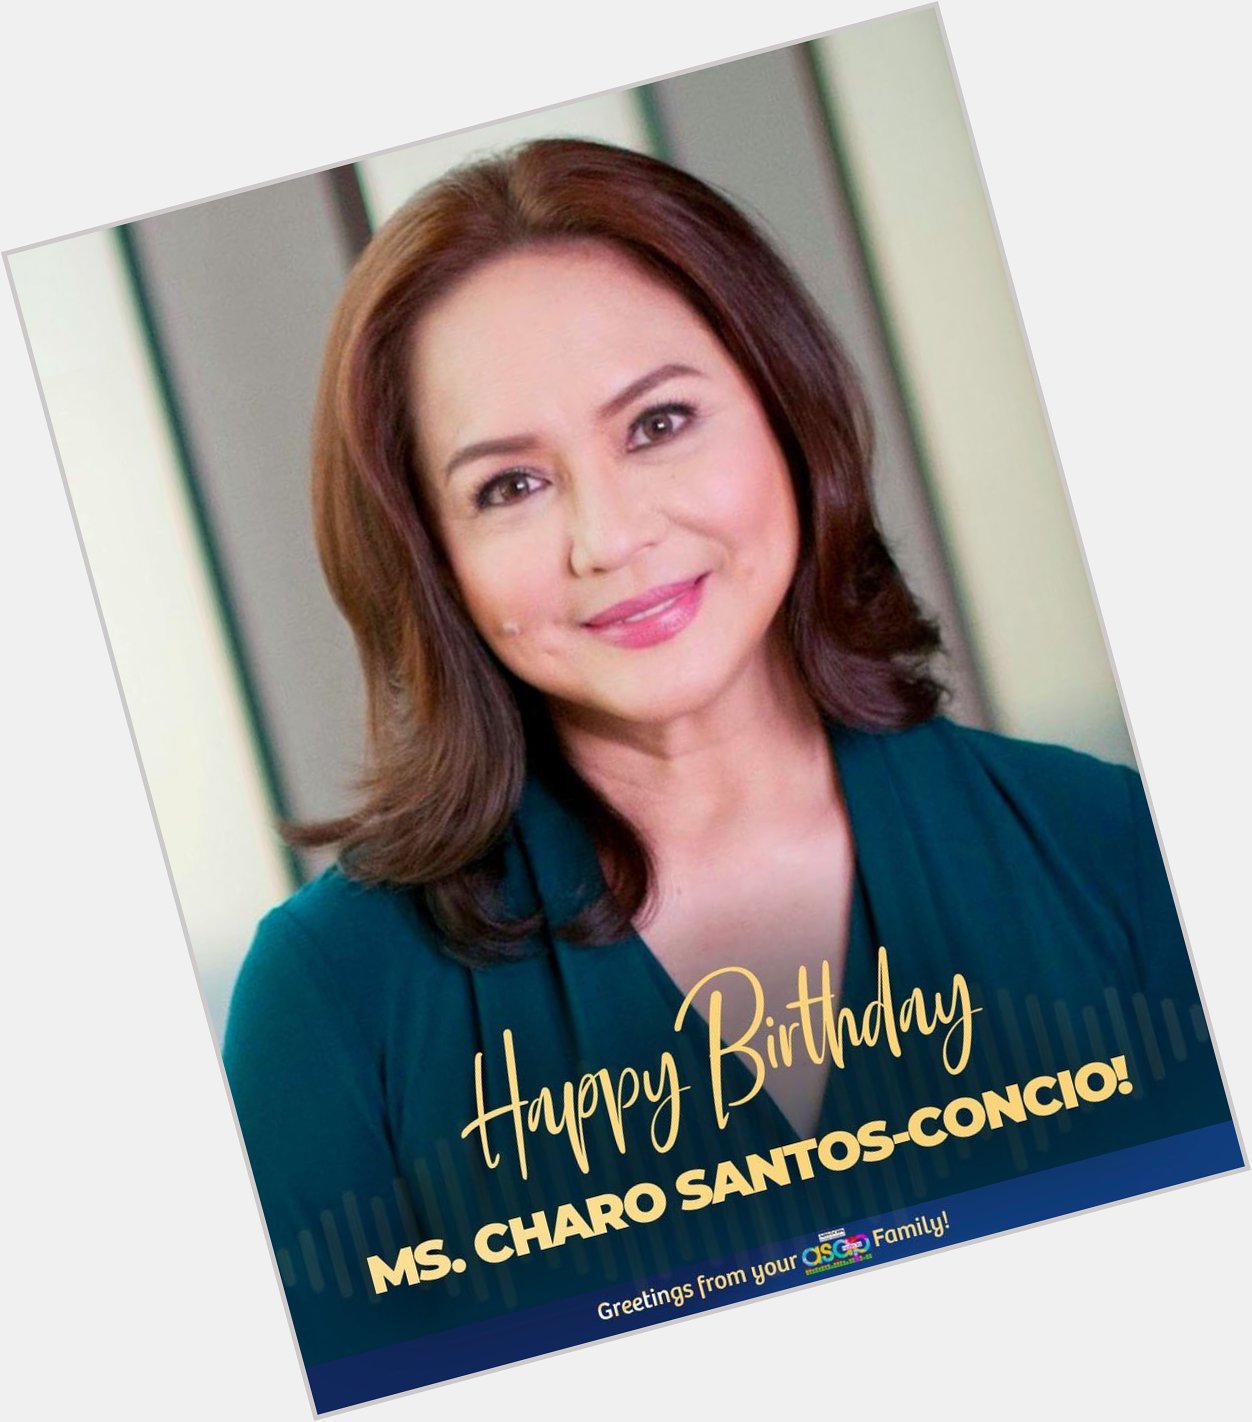 Happy Birthday Ma am Charo Santos-Concio! We love you! 